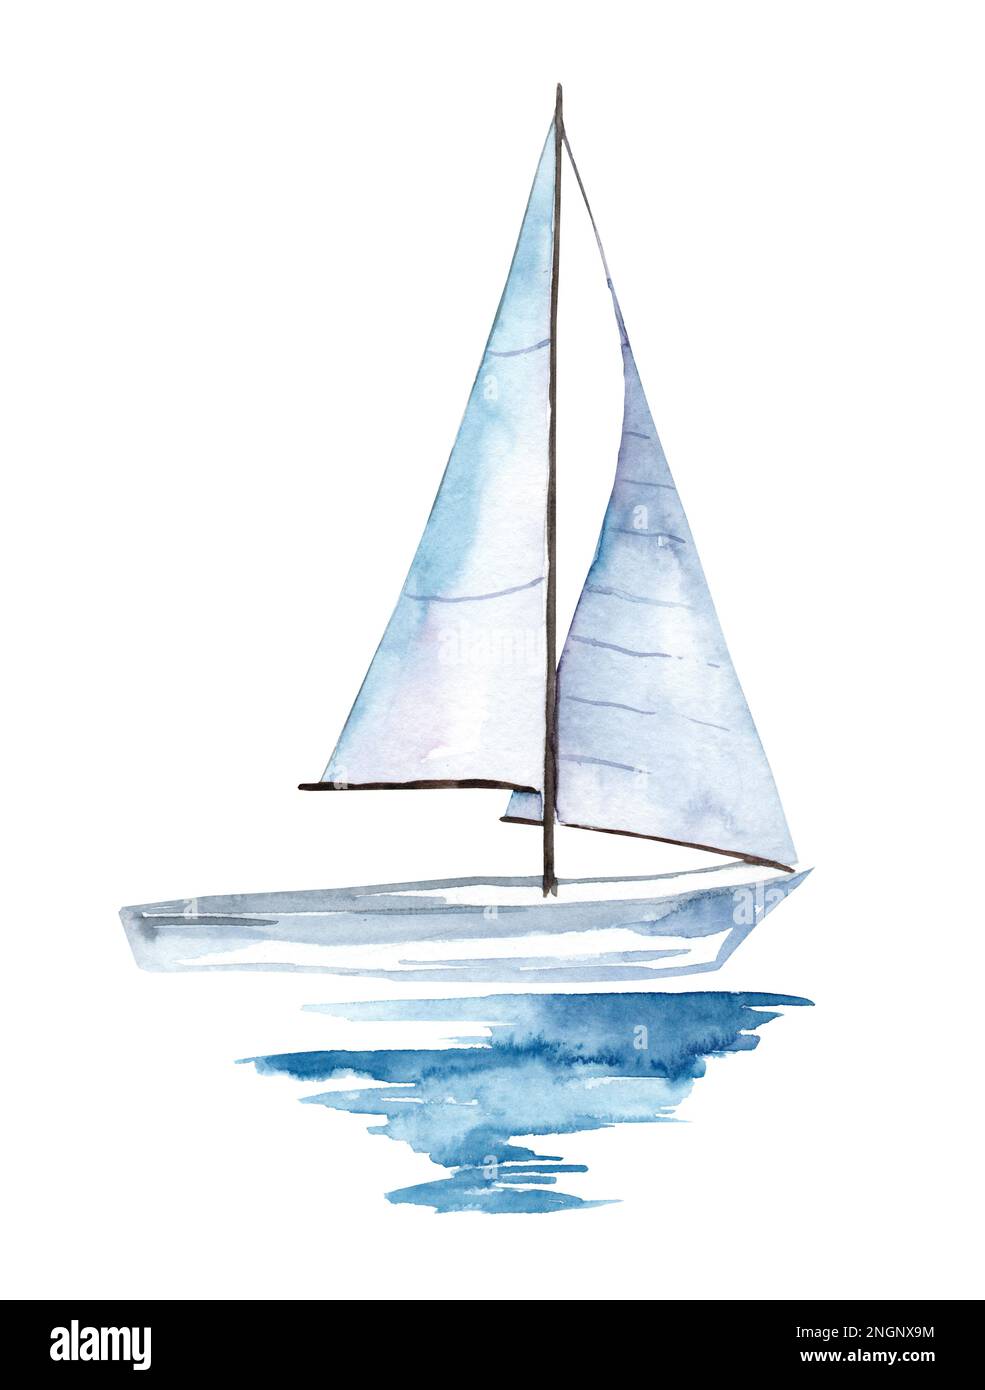 Bateau à voile sur la surface de l'eau. Illustration aquarelle. Yacht Banque D'Images